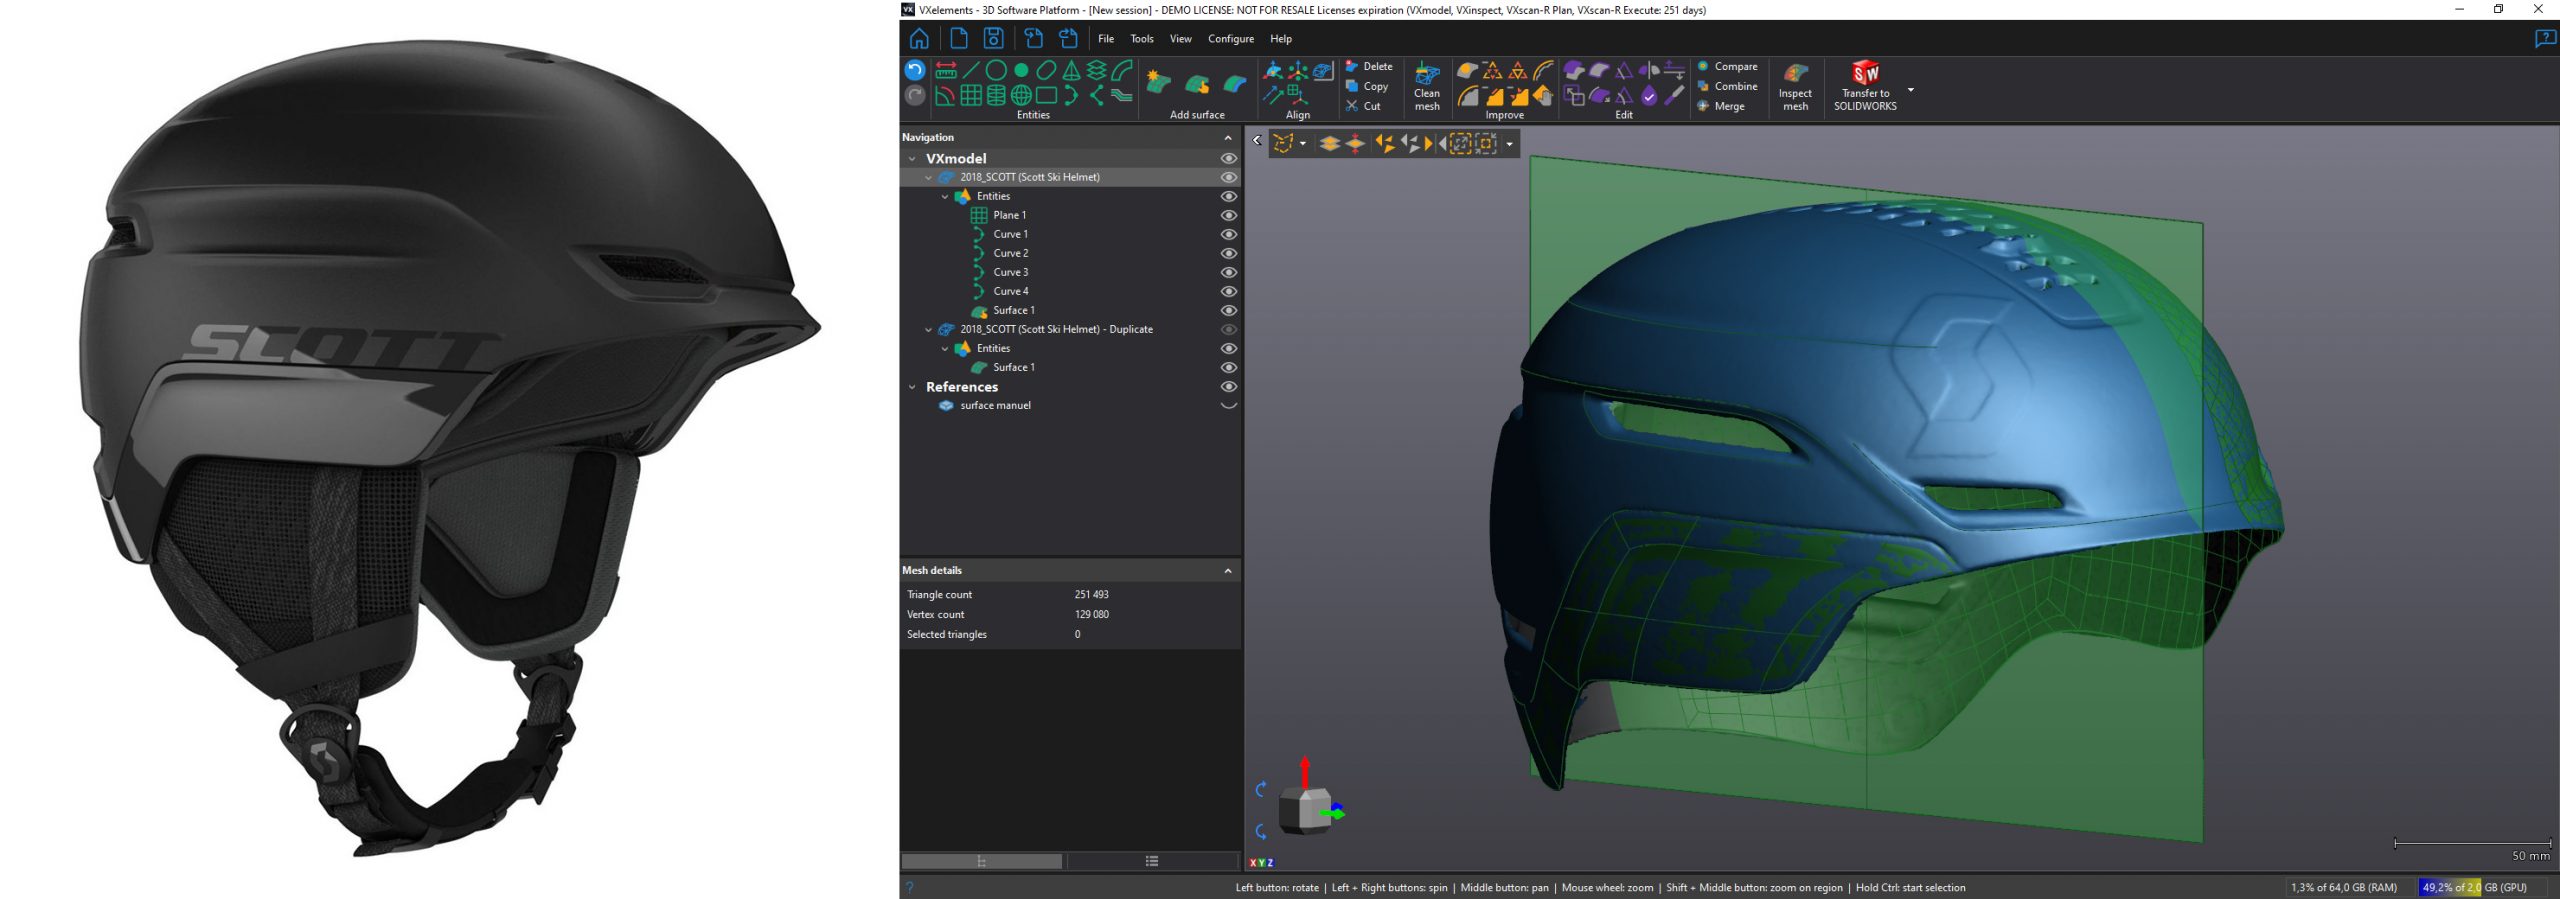 Comparación de un casco de esquí real y un casco en modelo 3D en el software VXelements